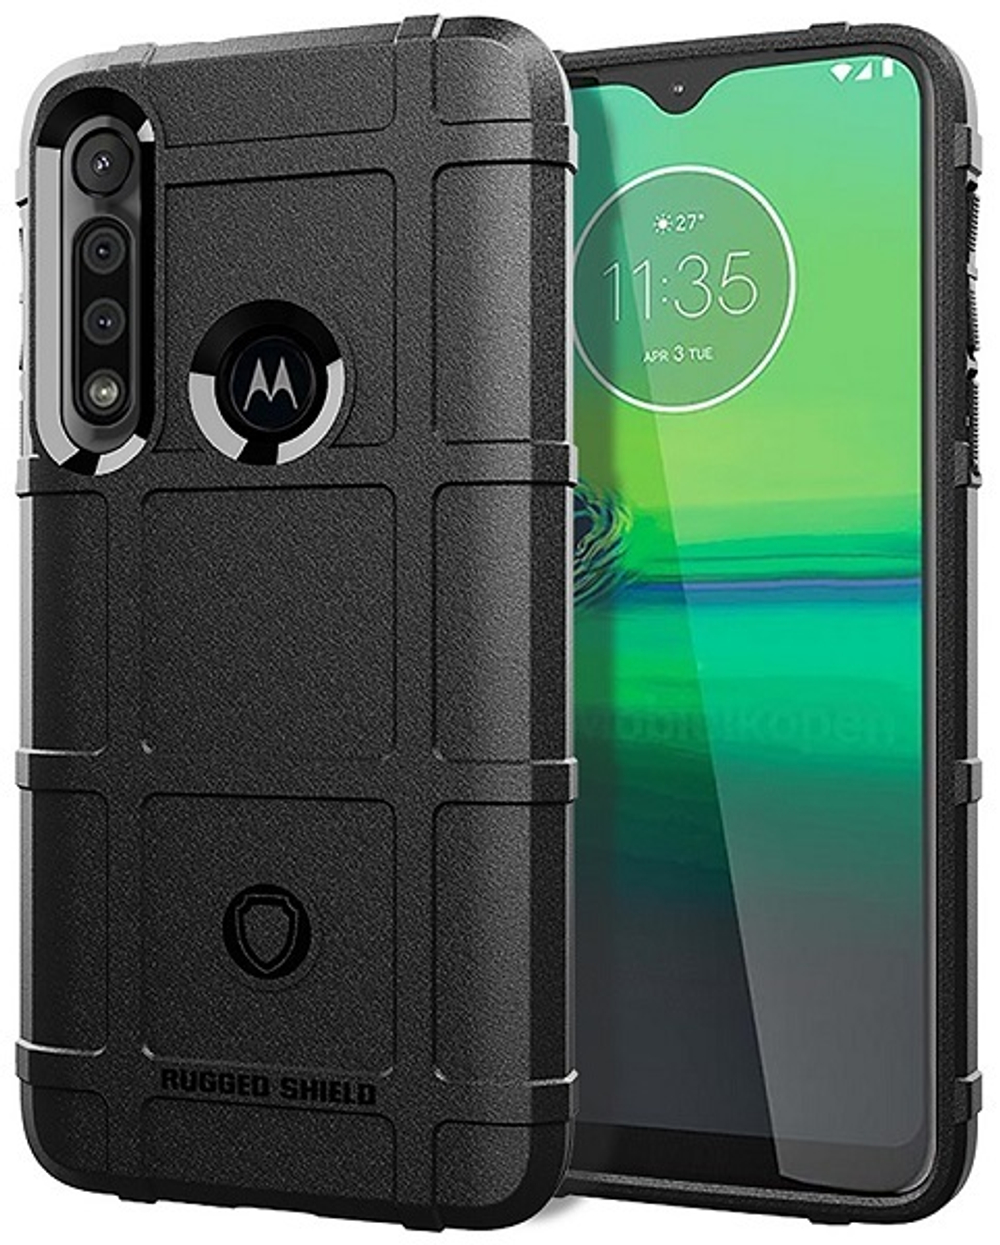 Чехол для Motorola Moto G8 Play (One Macro) цвет Black (черный), серия Armor от Caseport